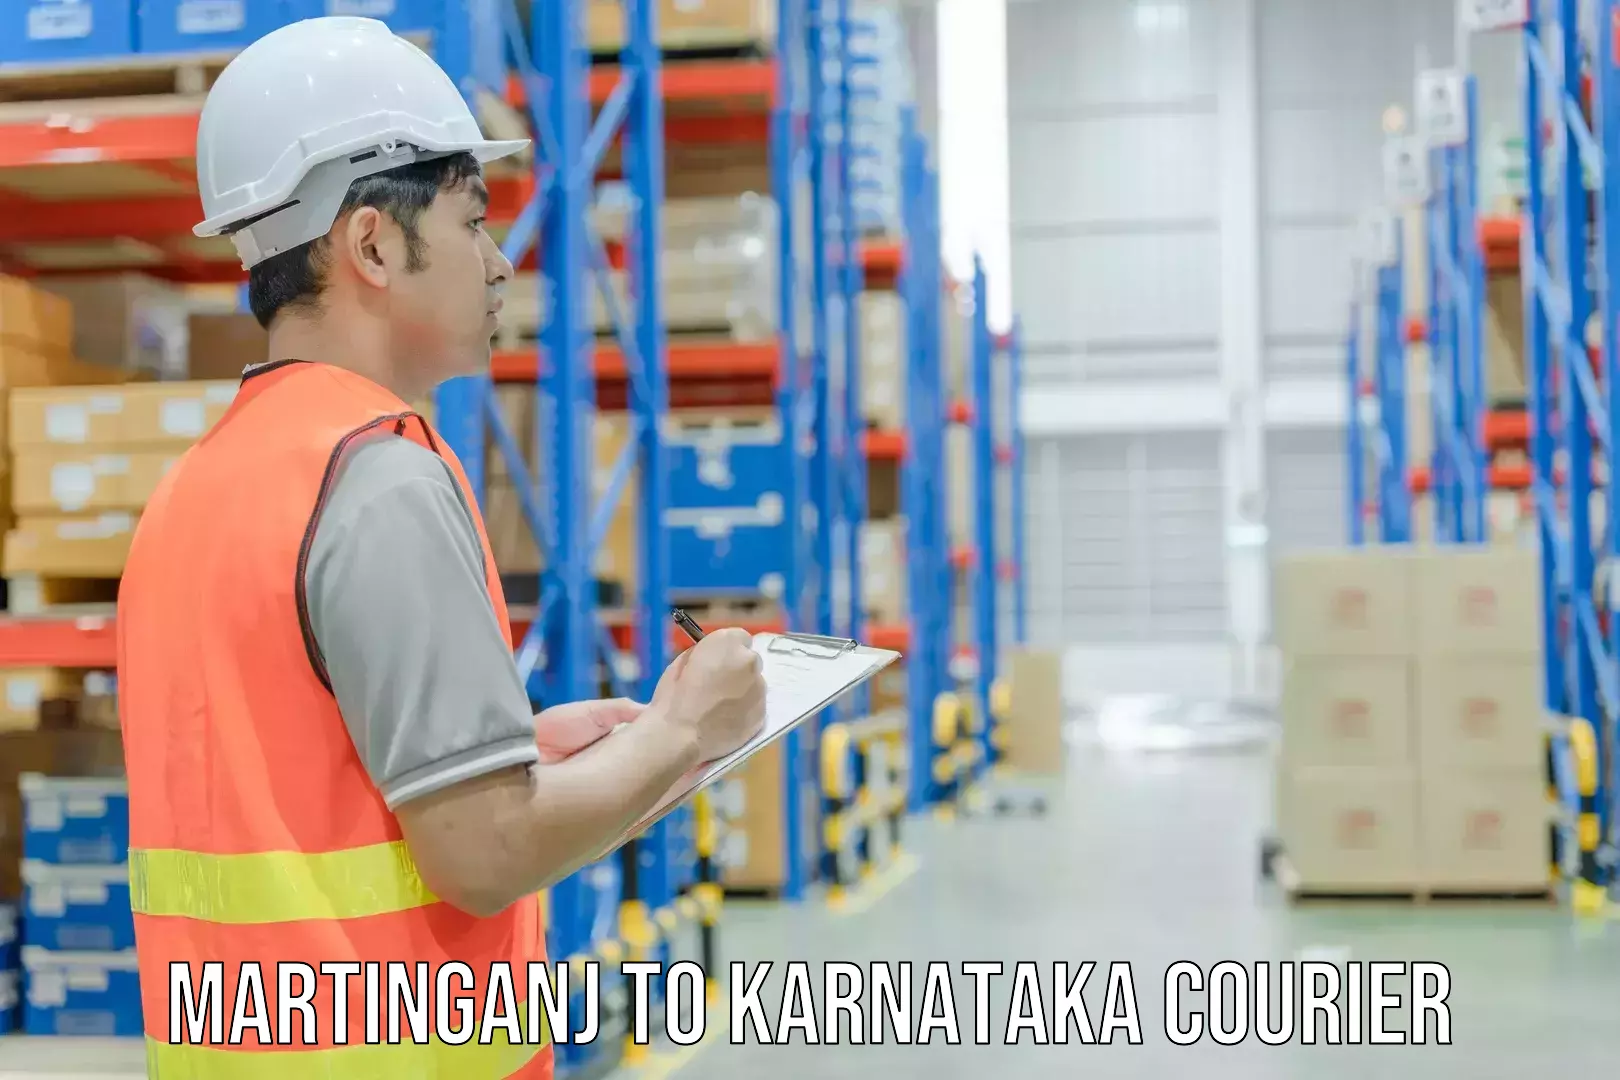 Regular parcel service Martinganj to Karnataka